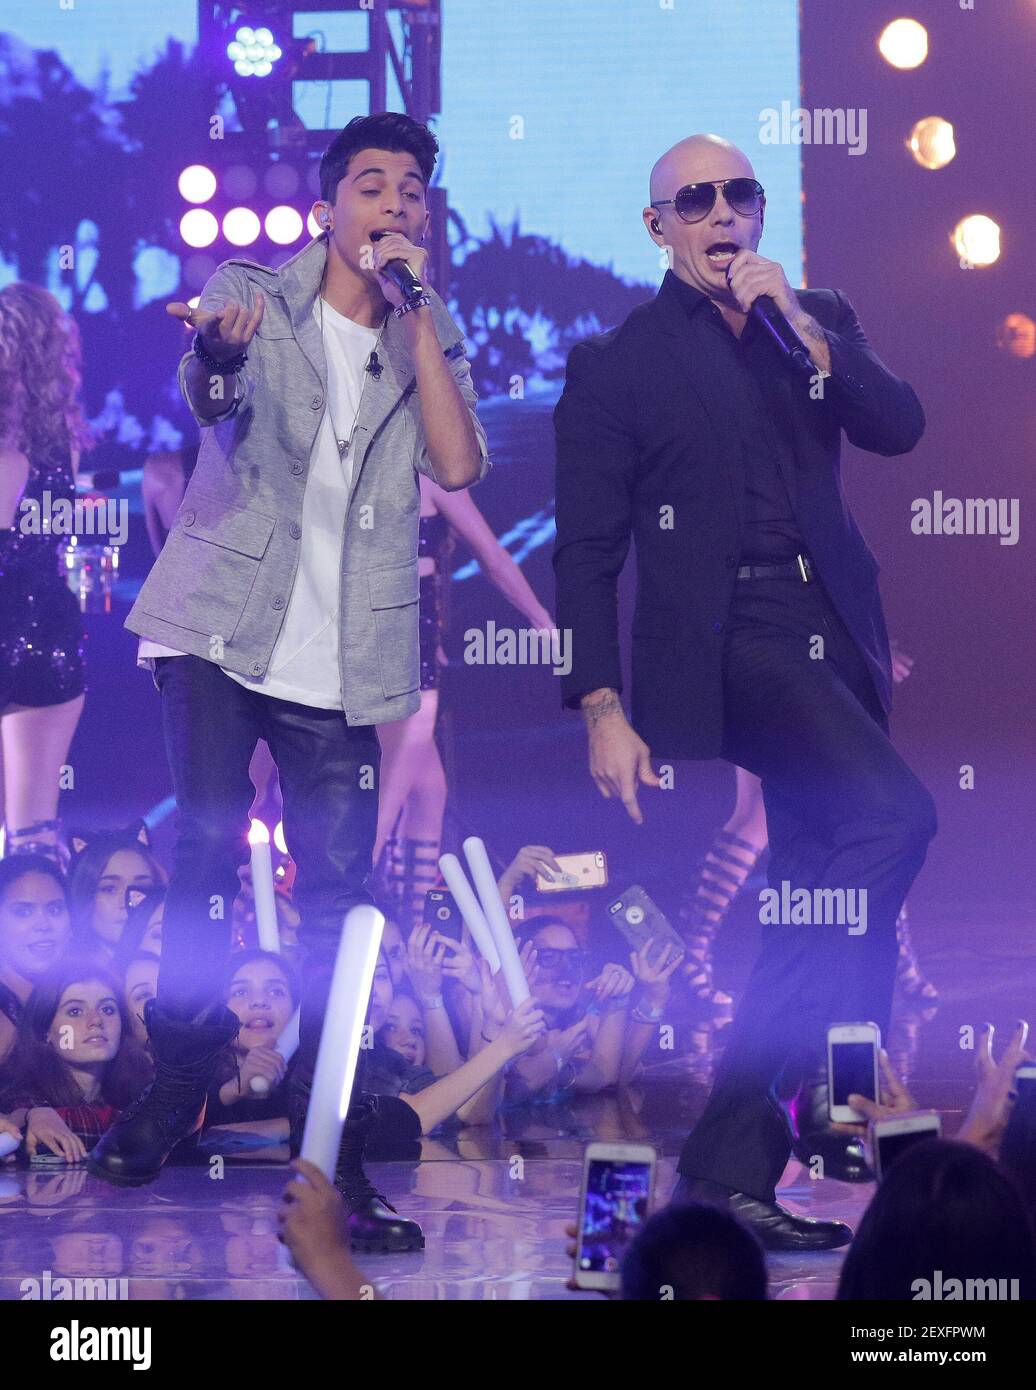 Miami,FL-DECEMBER 13: Erick Colon and Pitbull perform on stage during  Univision "La Banda" Finale